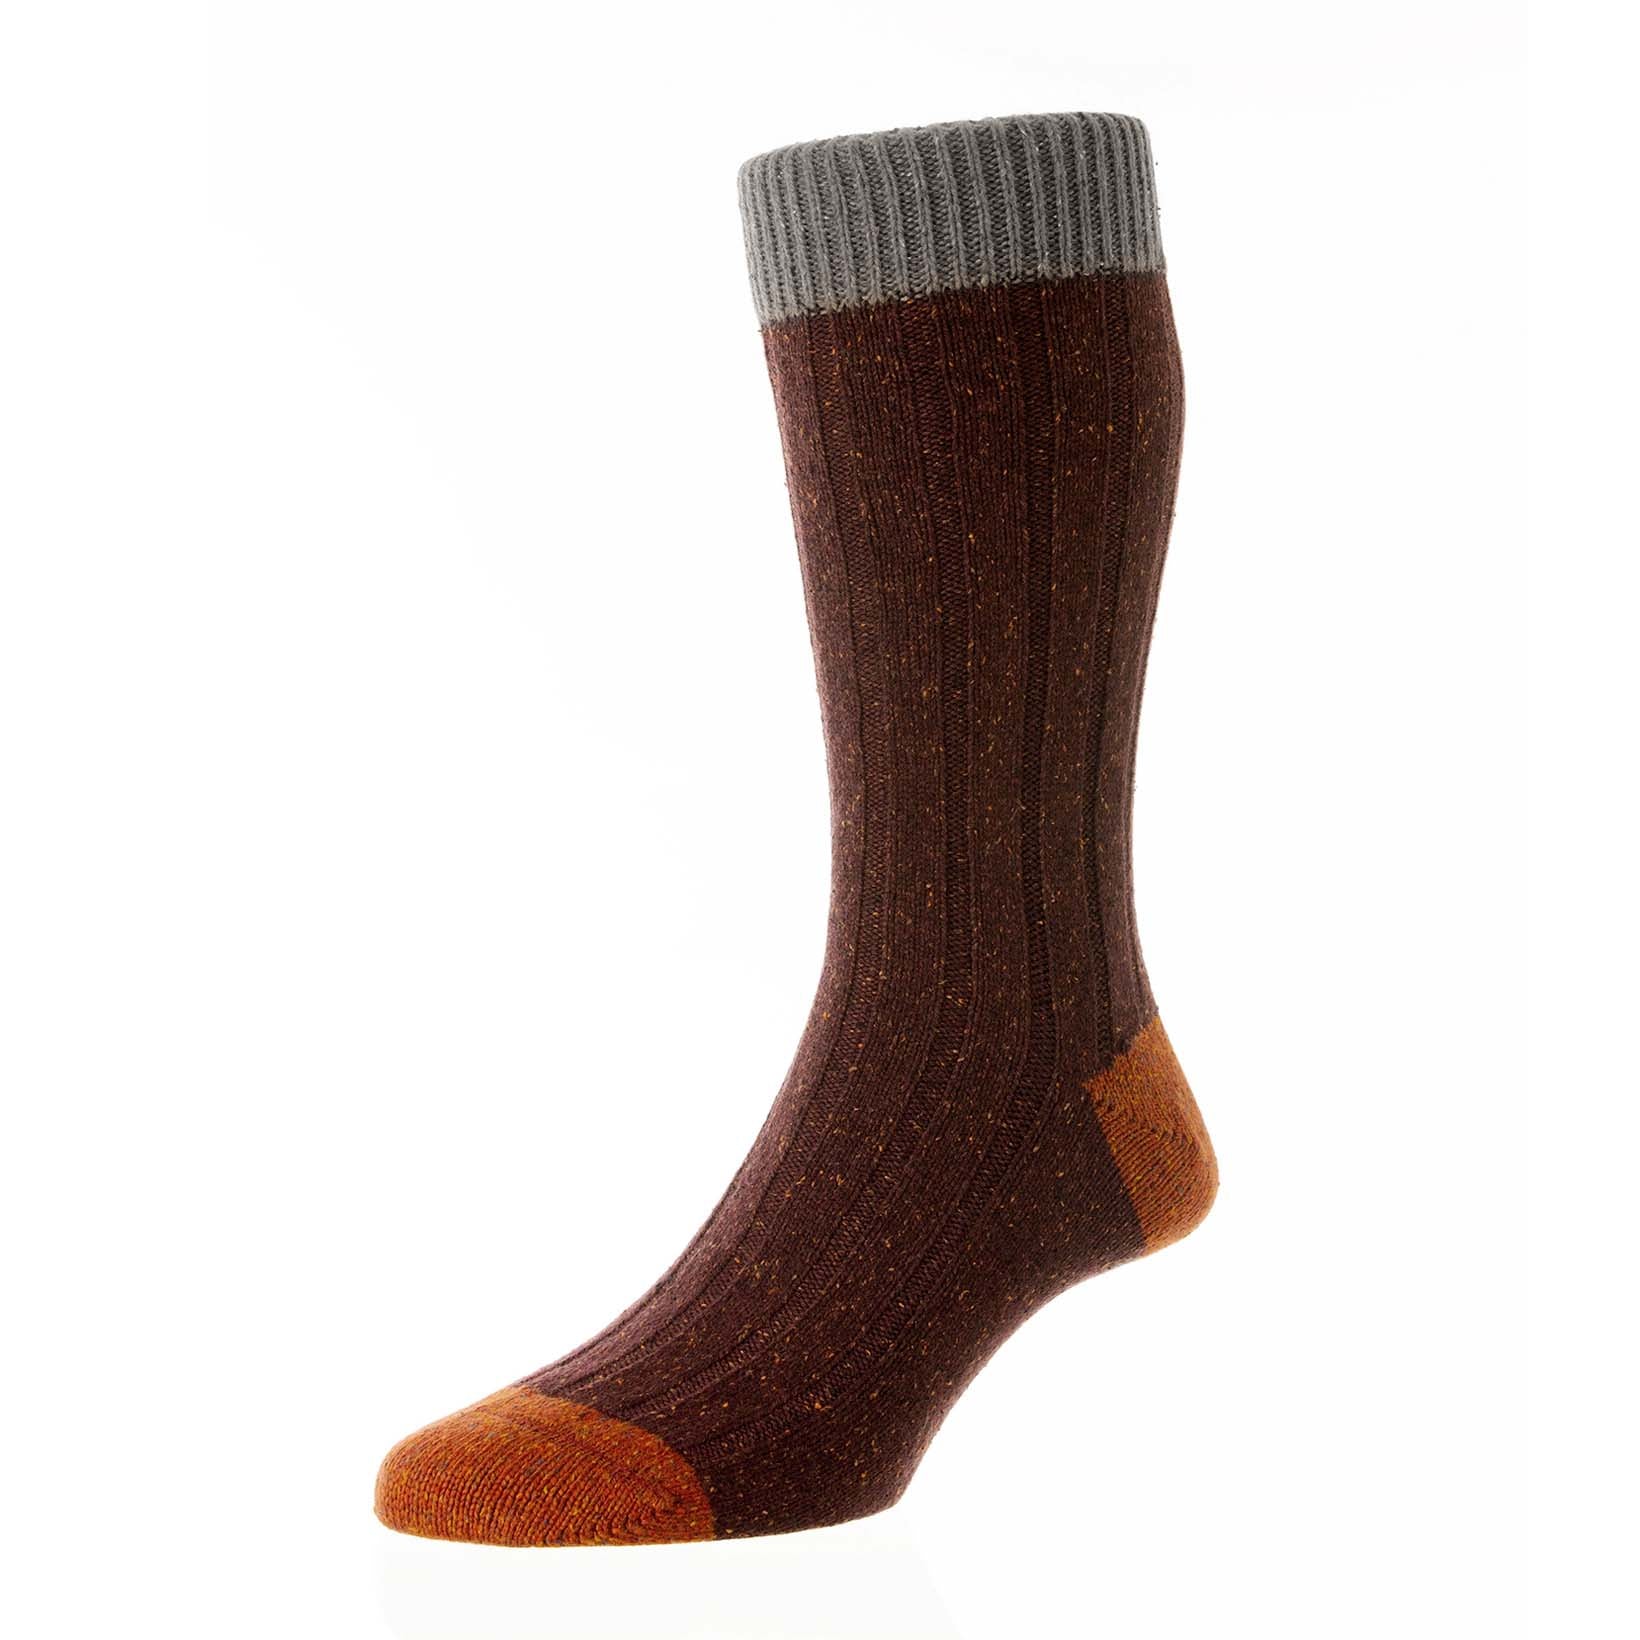 Thornham - 6x2 Rippen mit Kontrast Wolle Socke für Herren-Scott Nichol-Conrad Hasselbach Shoes & Garment